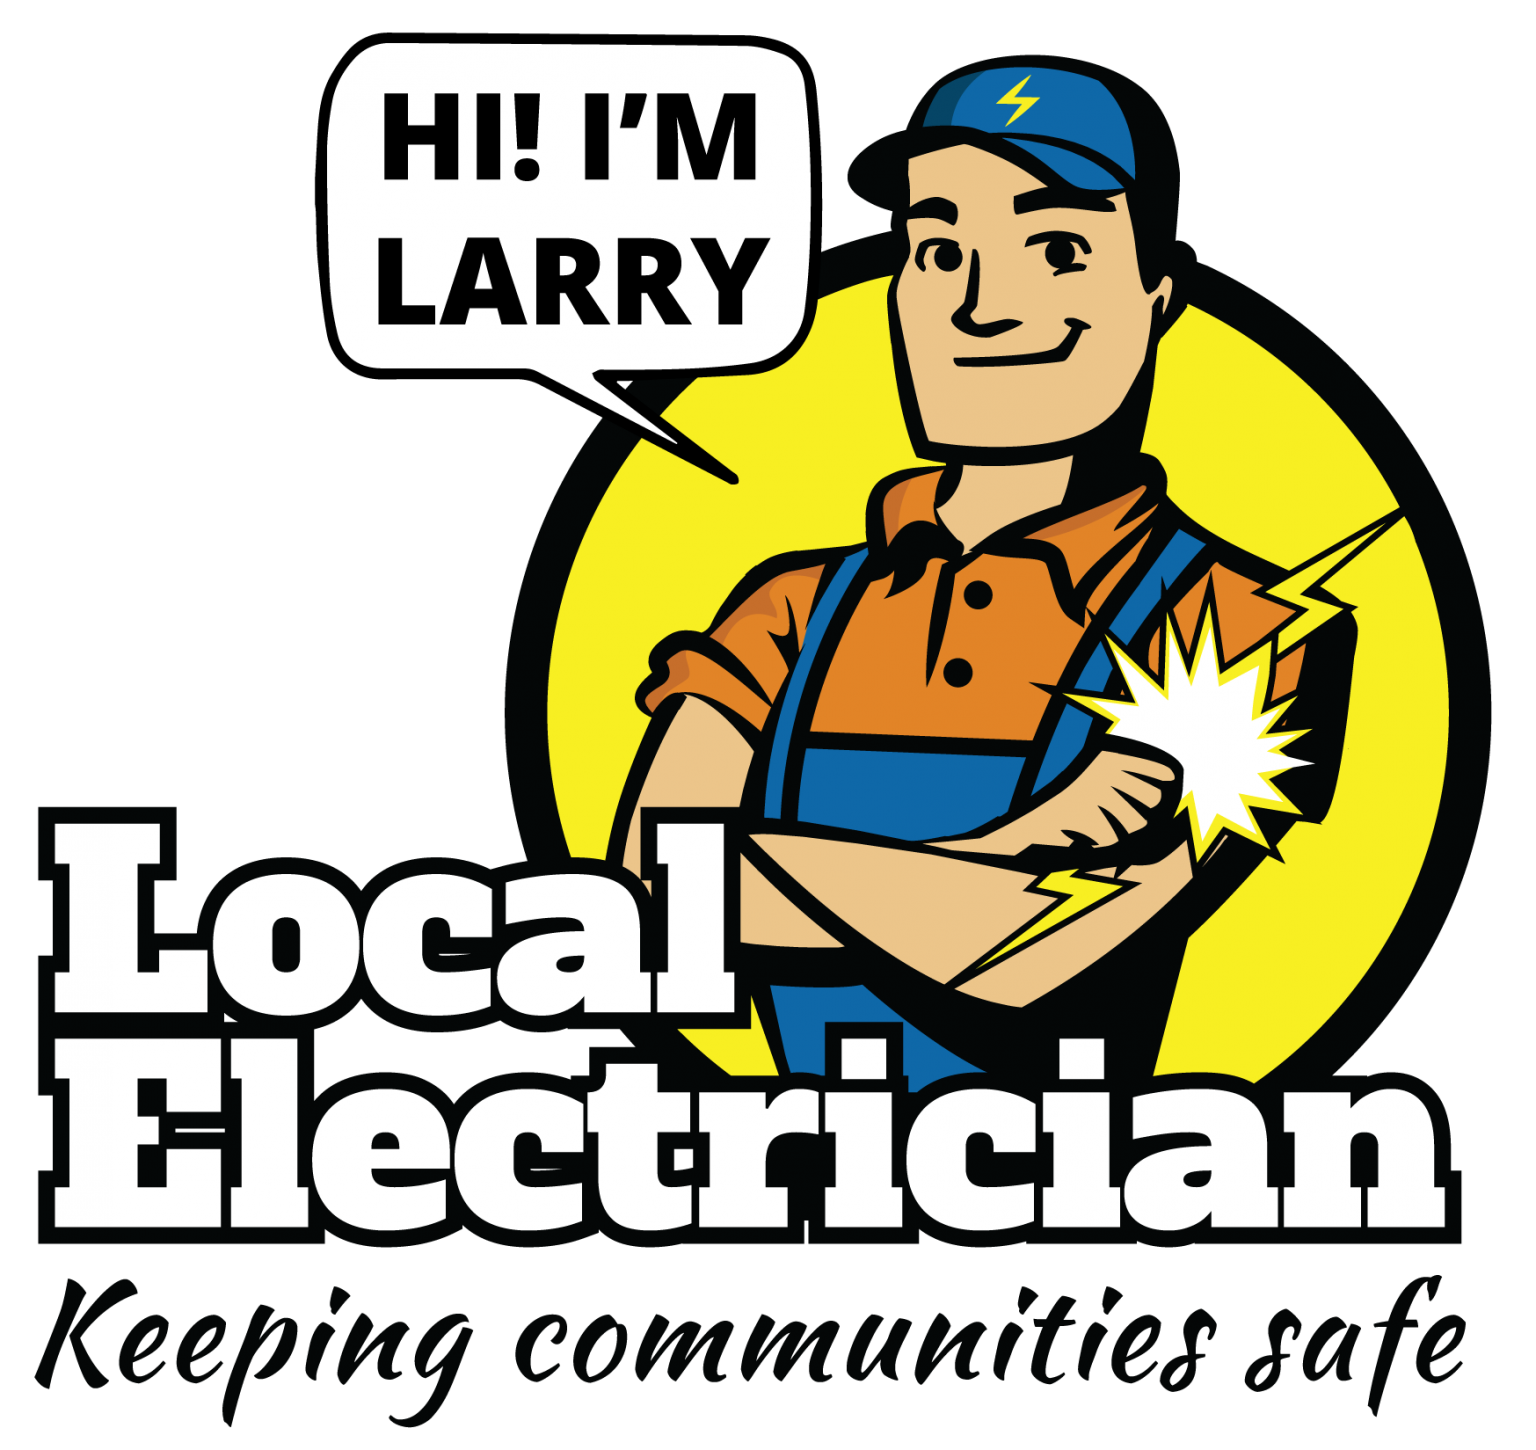 Local Electrician logo